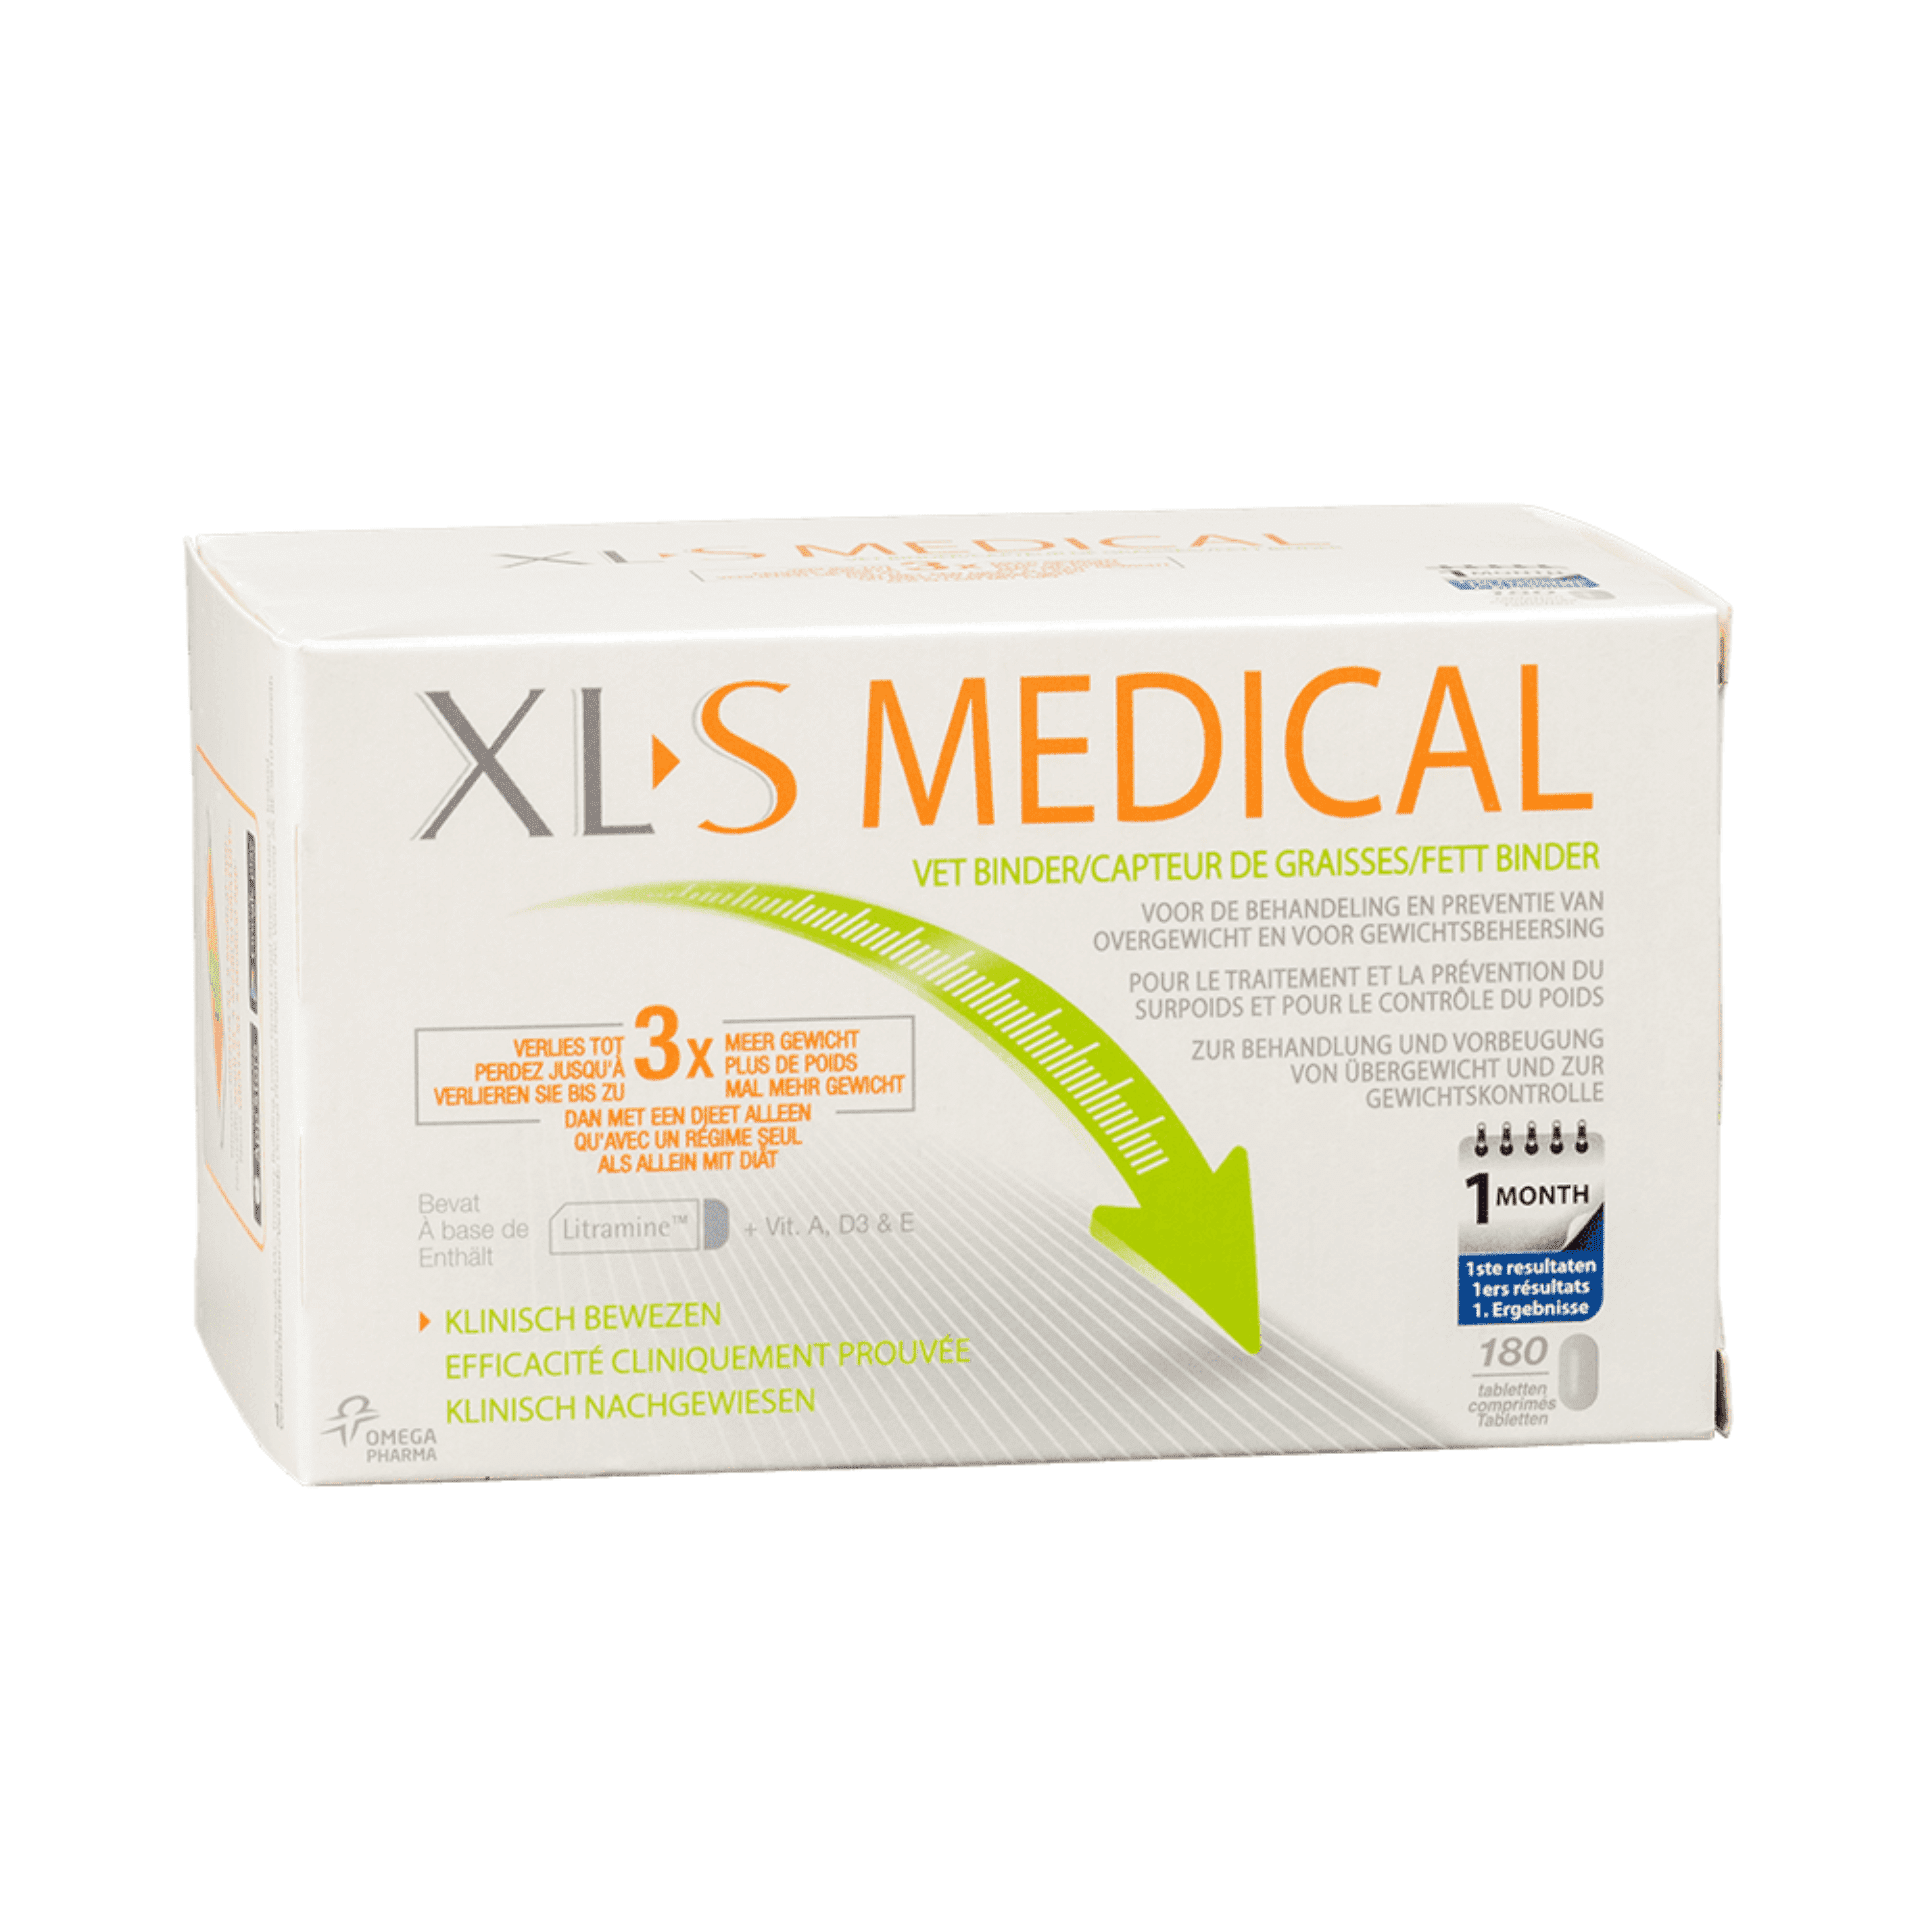 XLS Medical Fat Binder soutient votre alimentation et vous aide à perdre du poids 180 comprimés